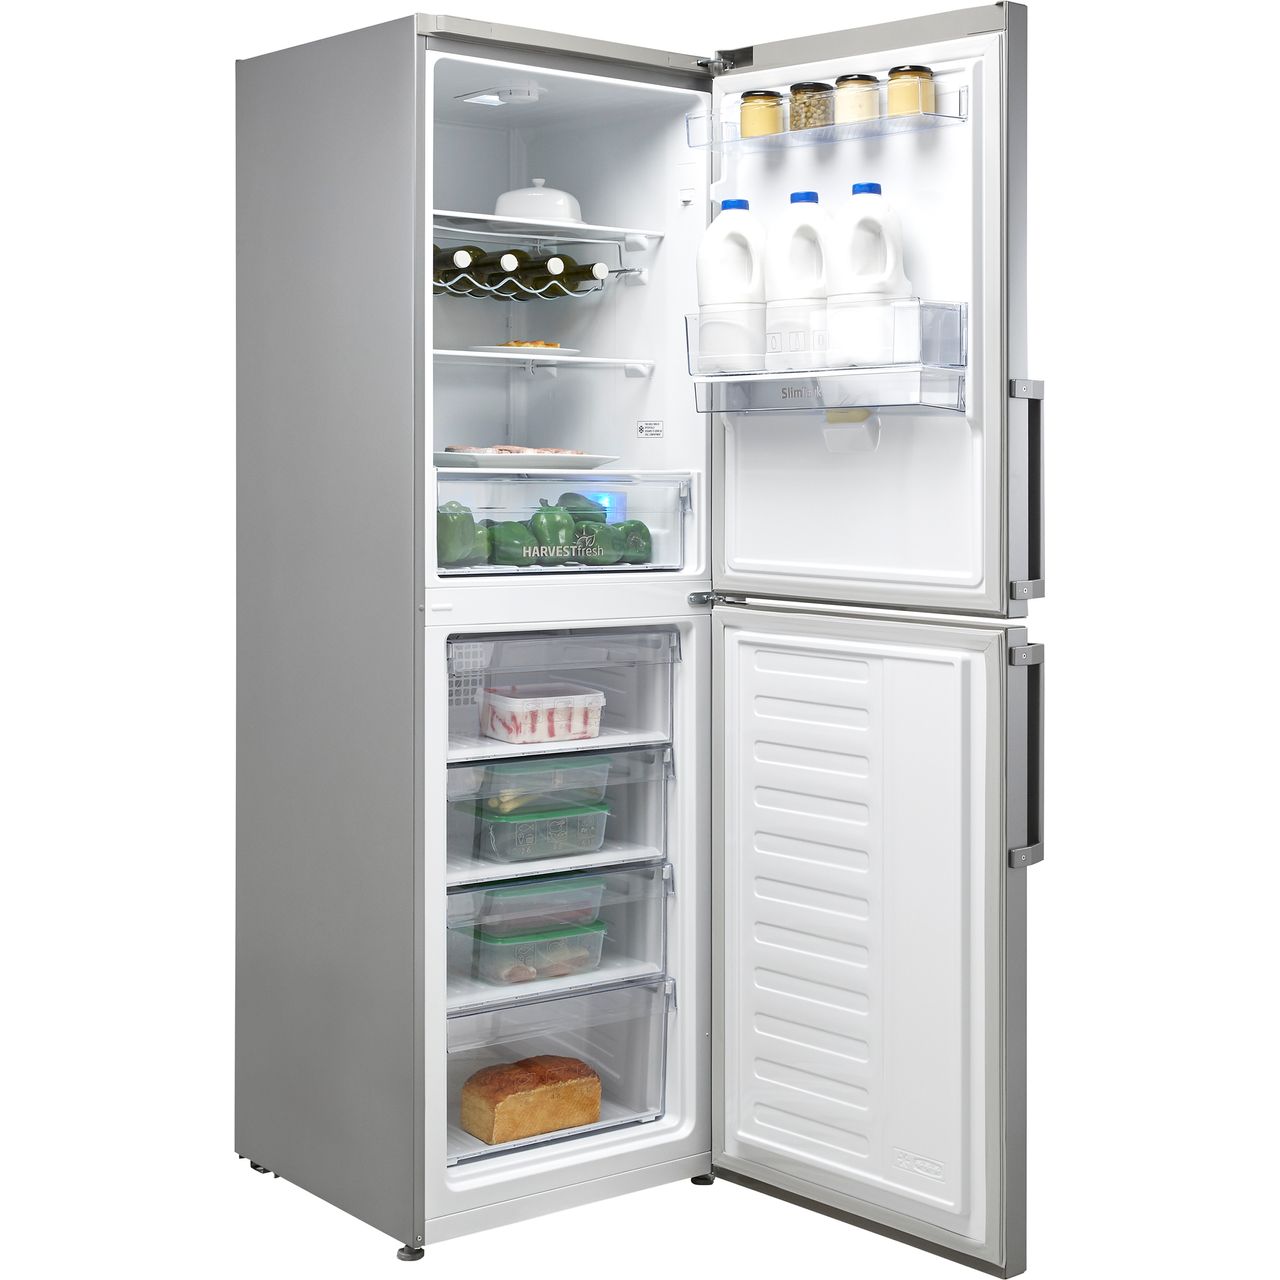 Réfrigérateur BEKO 406L Combinés No Frost / Silver + Livraison +  Installation et Mise en Marche Gratuites